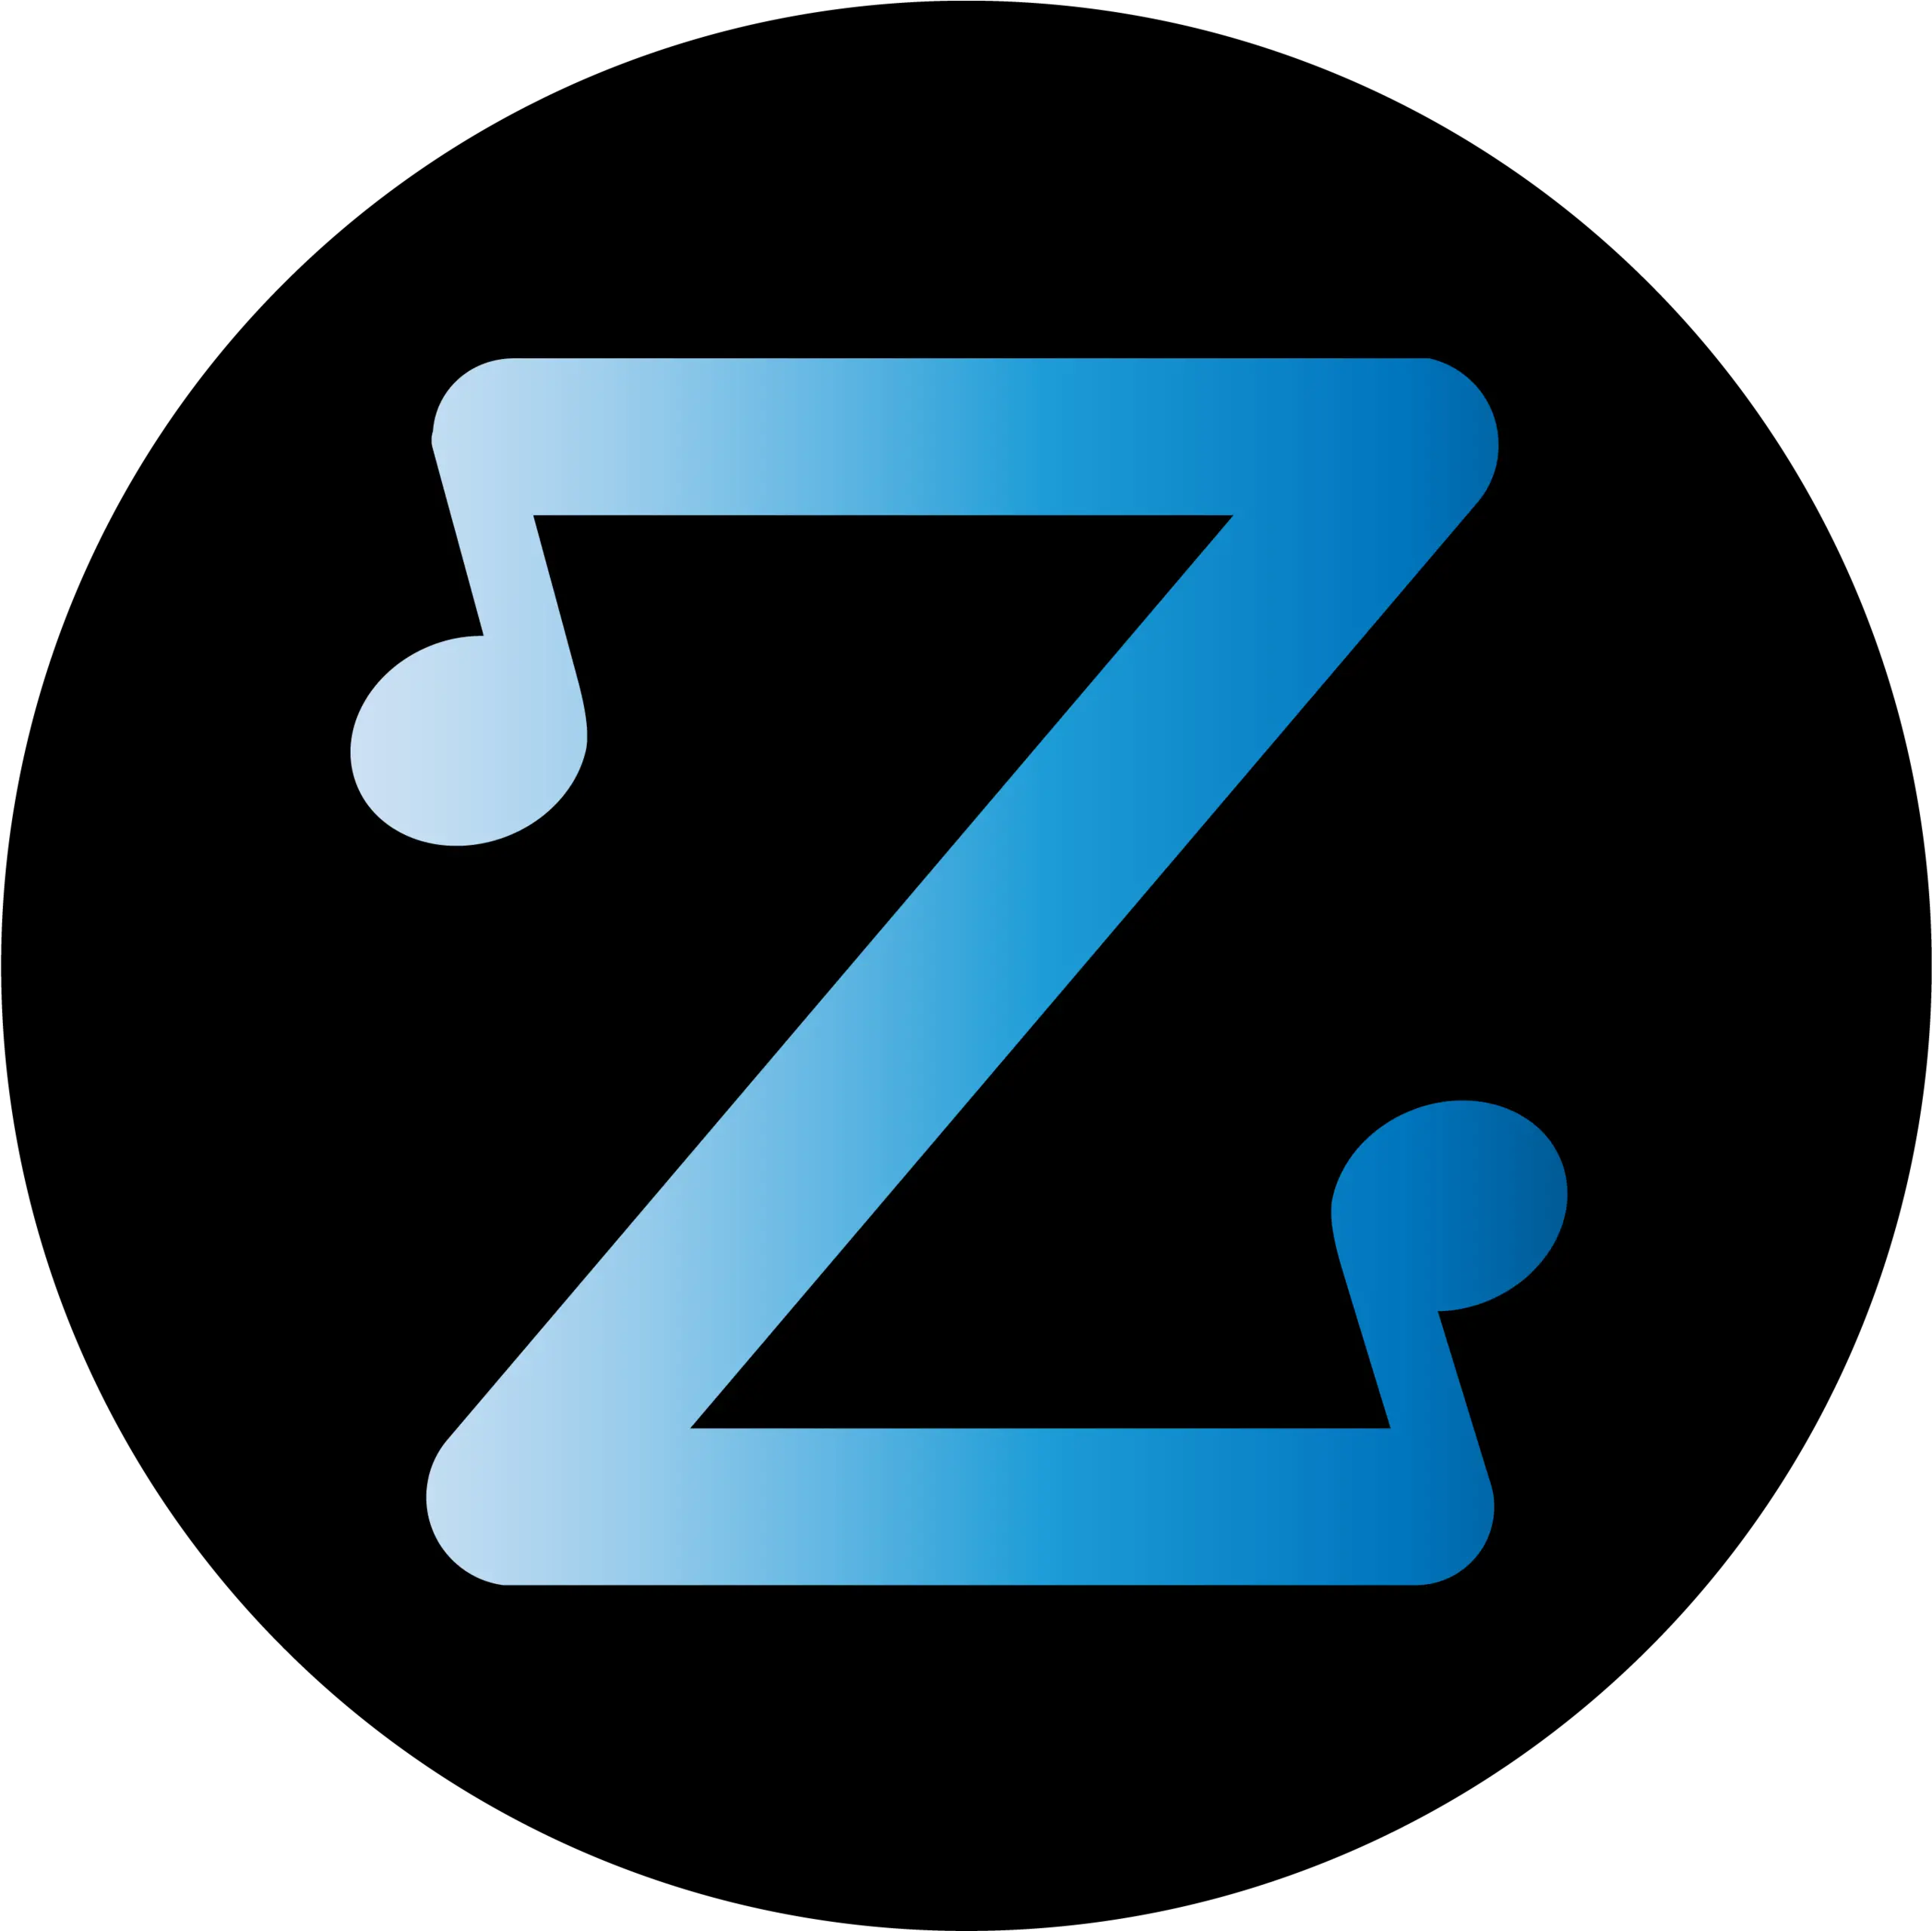 New Logo Desgn For Zefenfy U2014 Steemkr Traffic Sign Png Z Logo